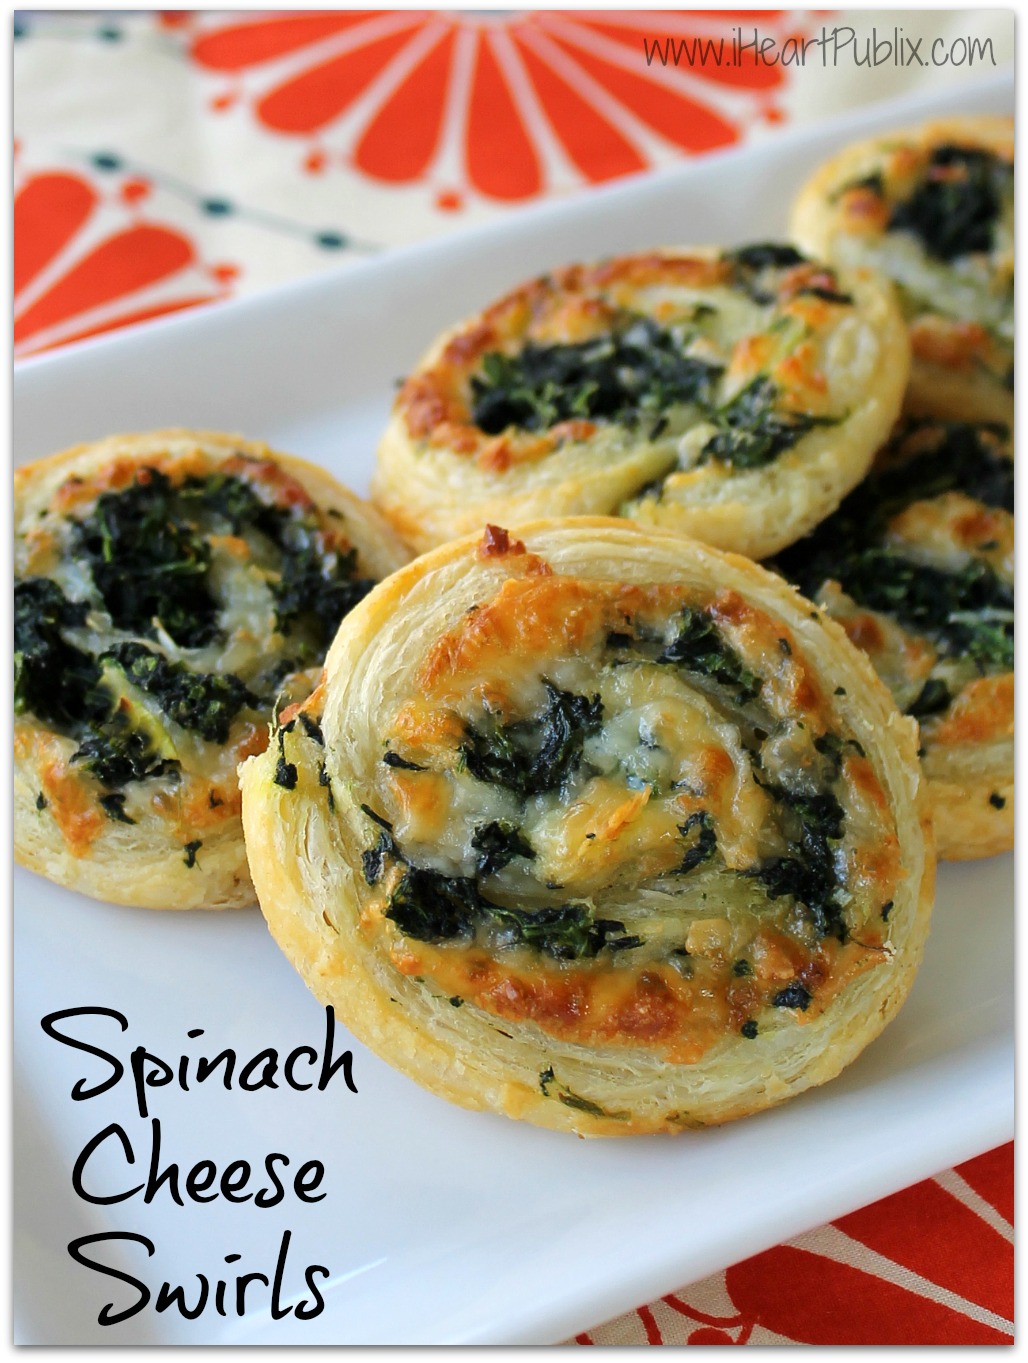 Spinach Cheese Swirls